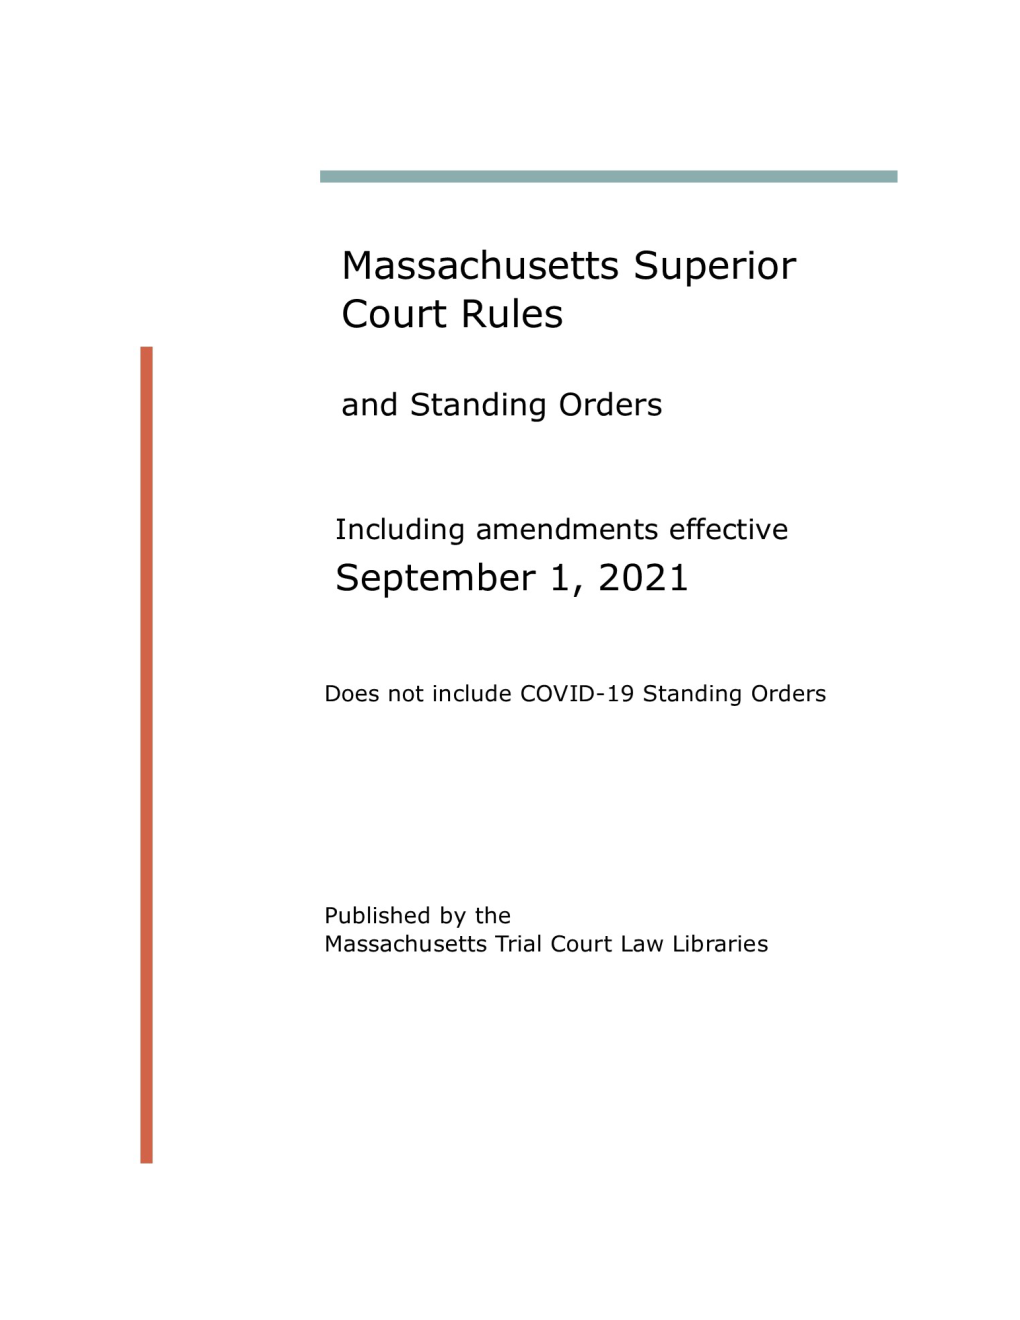 Massachusetts Superior Court Rules Effective September 1, 2021